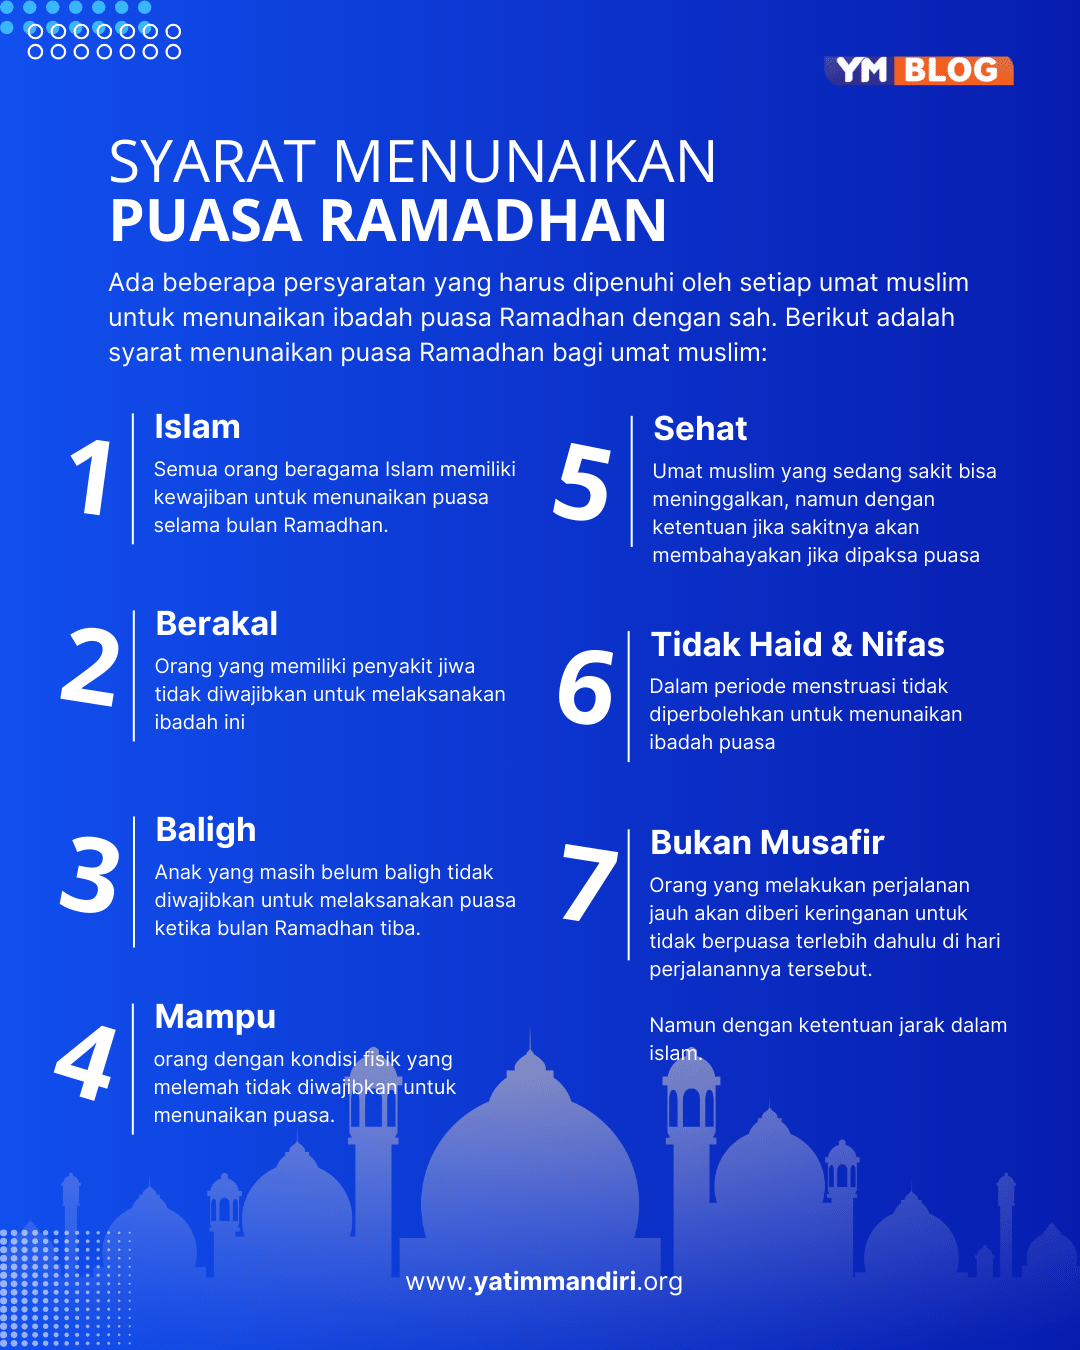 Syarat Menunaikan Puasa Ramadhan